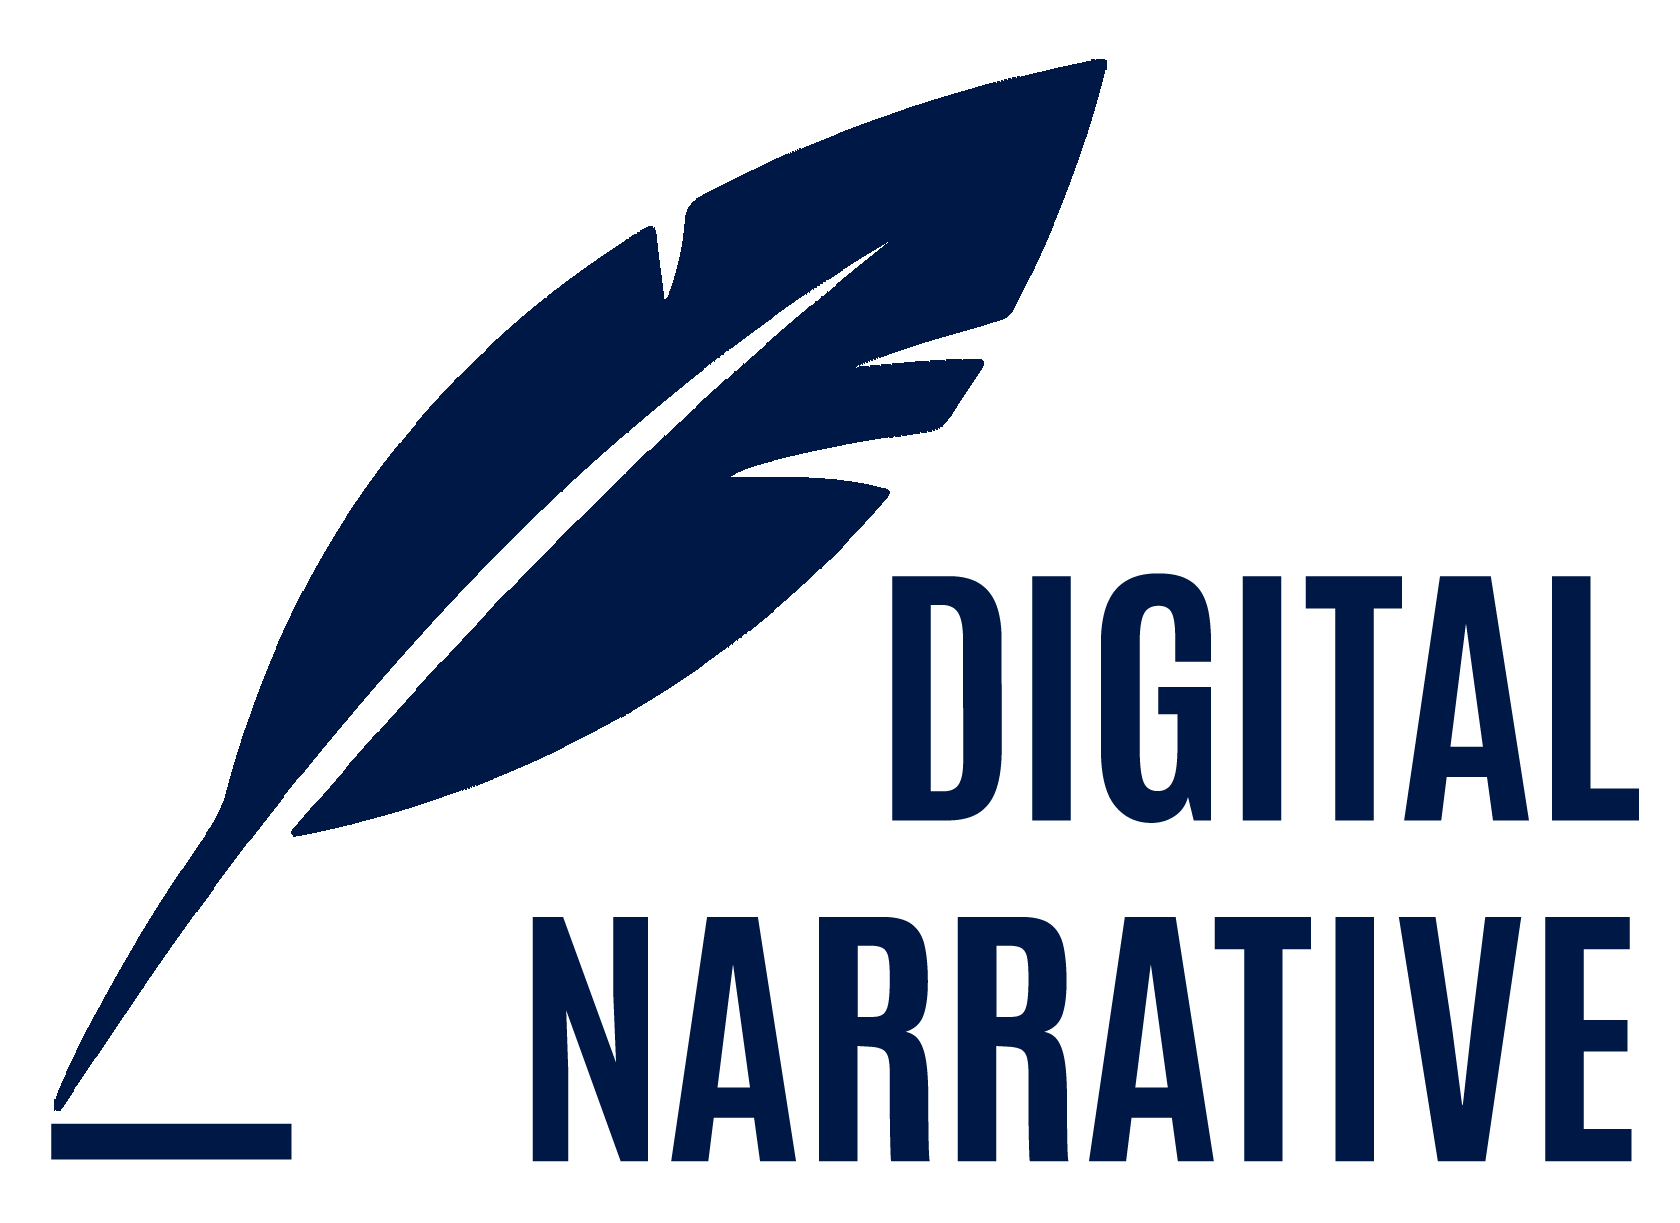 Digital Narrative Logo